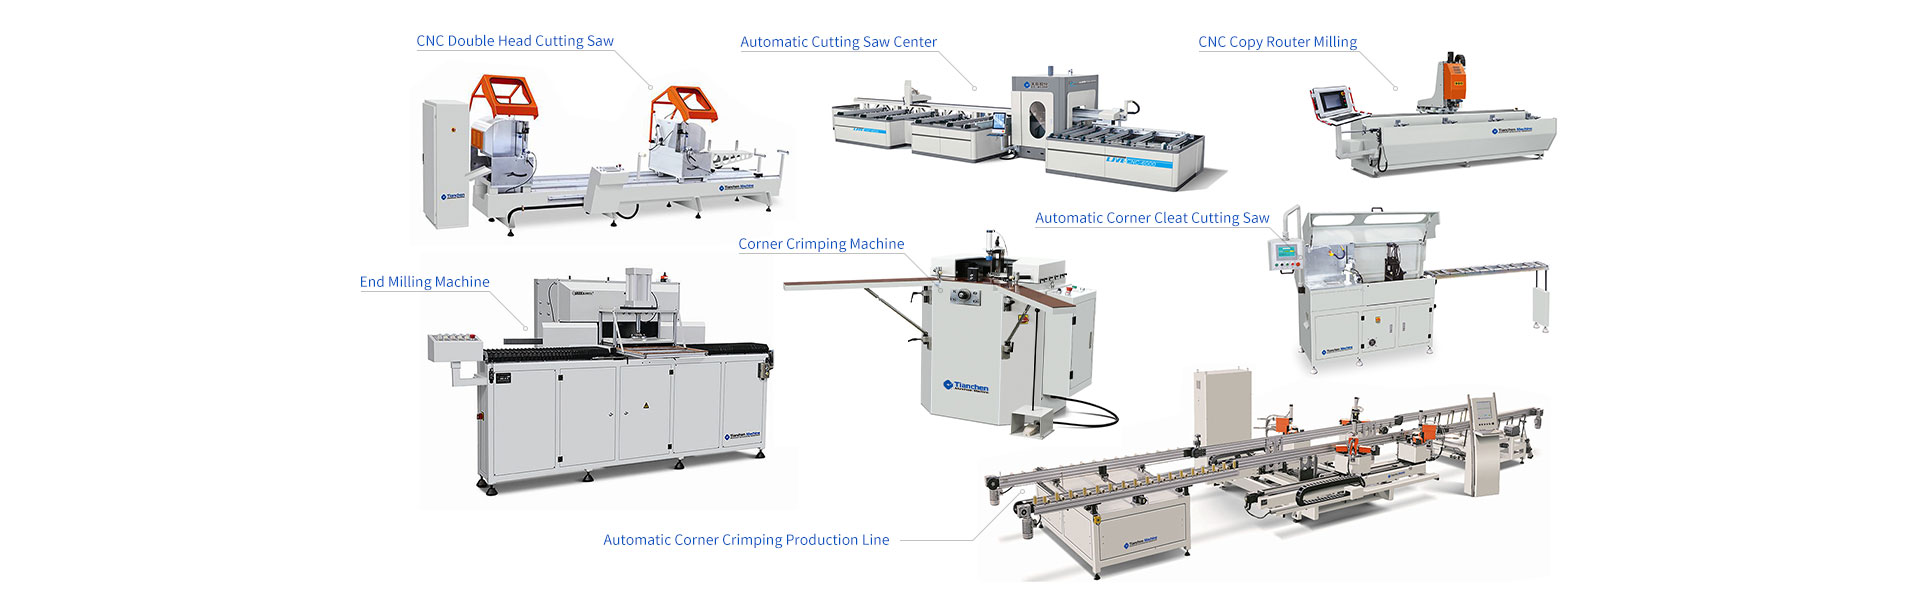 video of the fiber laser cutting machine